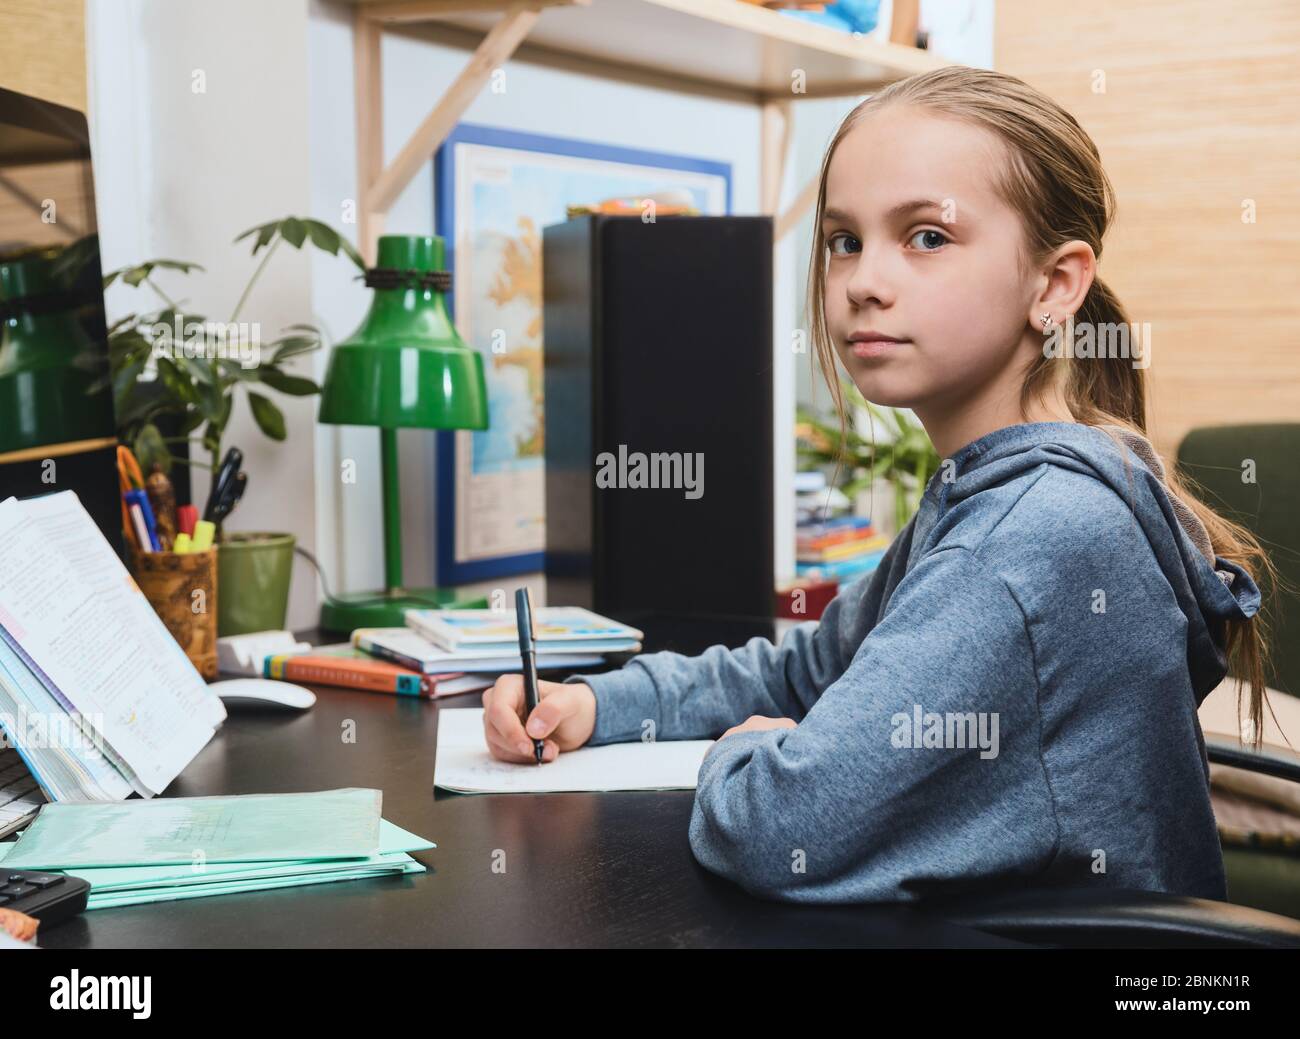 Écolière écrivant dans un carnet assis près d'une table. Elle étudie à la maison pour faire ses devoirs pendant son auto-isolement. Concept de homeschooling Banque D'Images